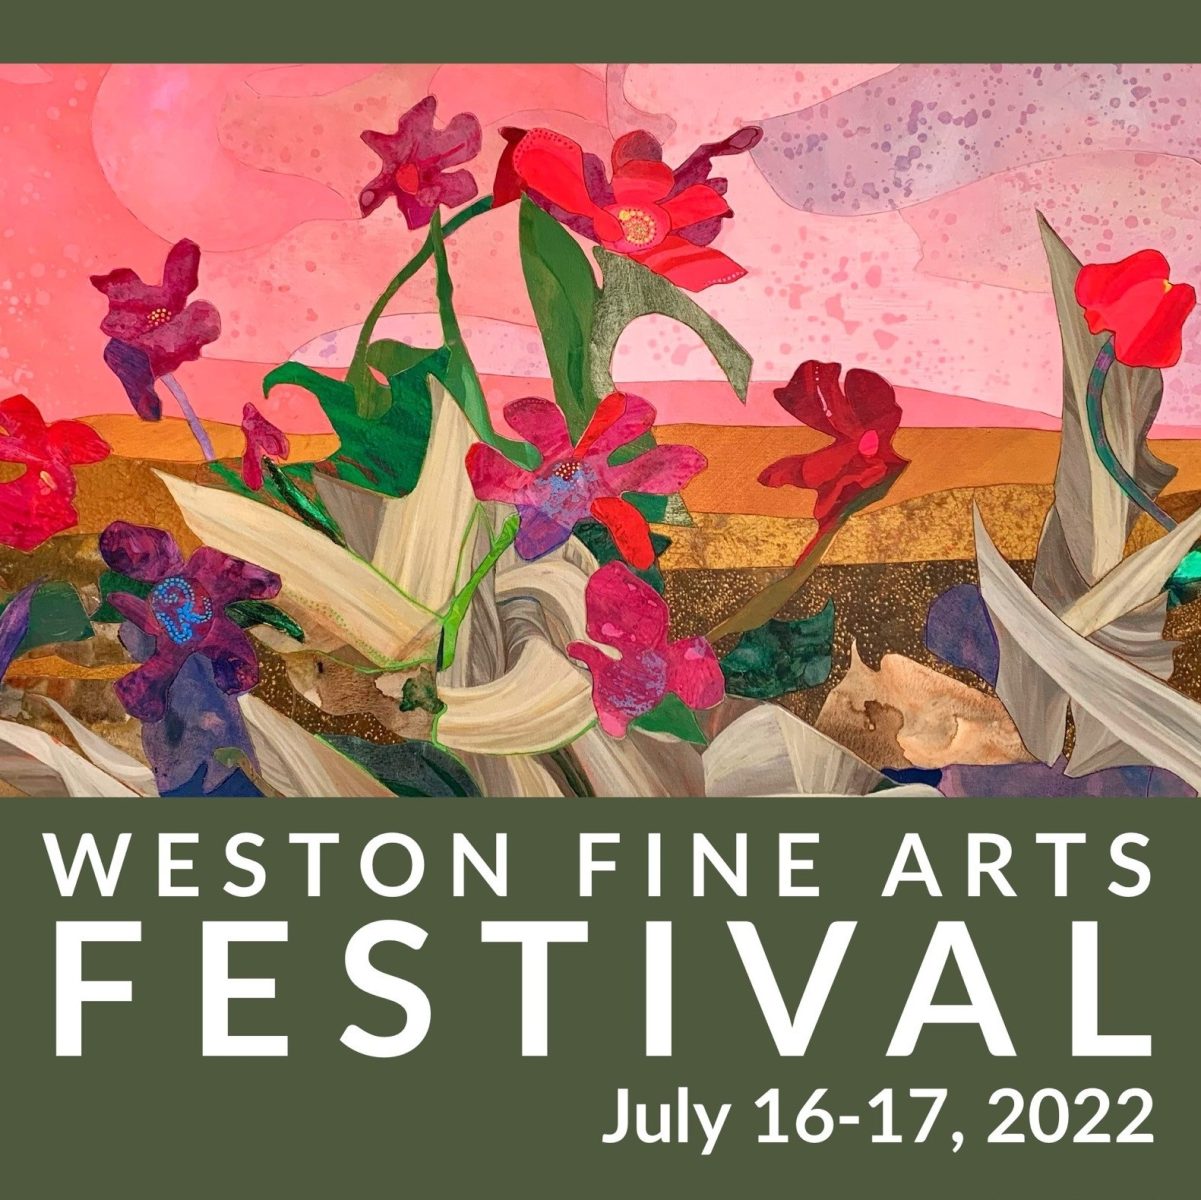 WestonArts Festival 2022